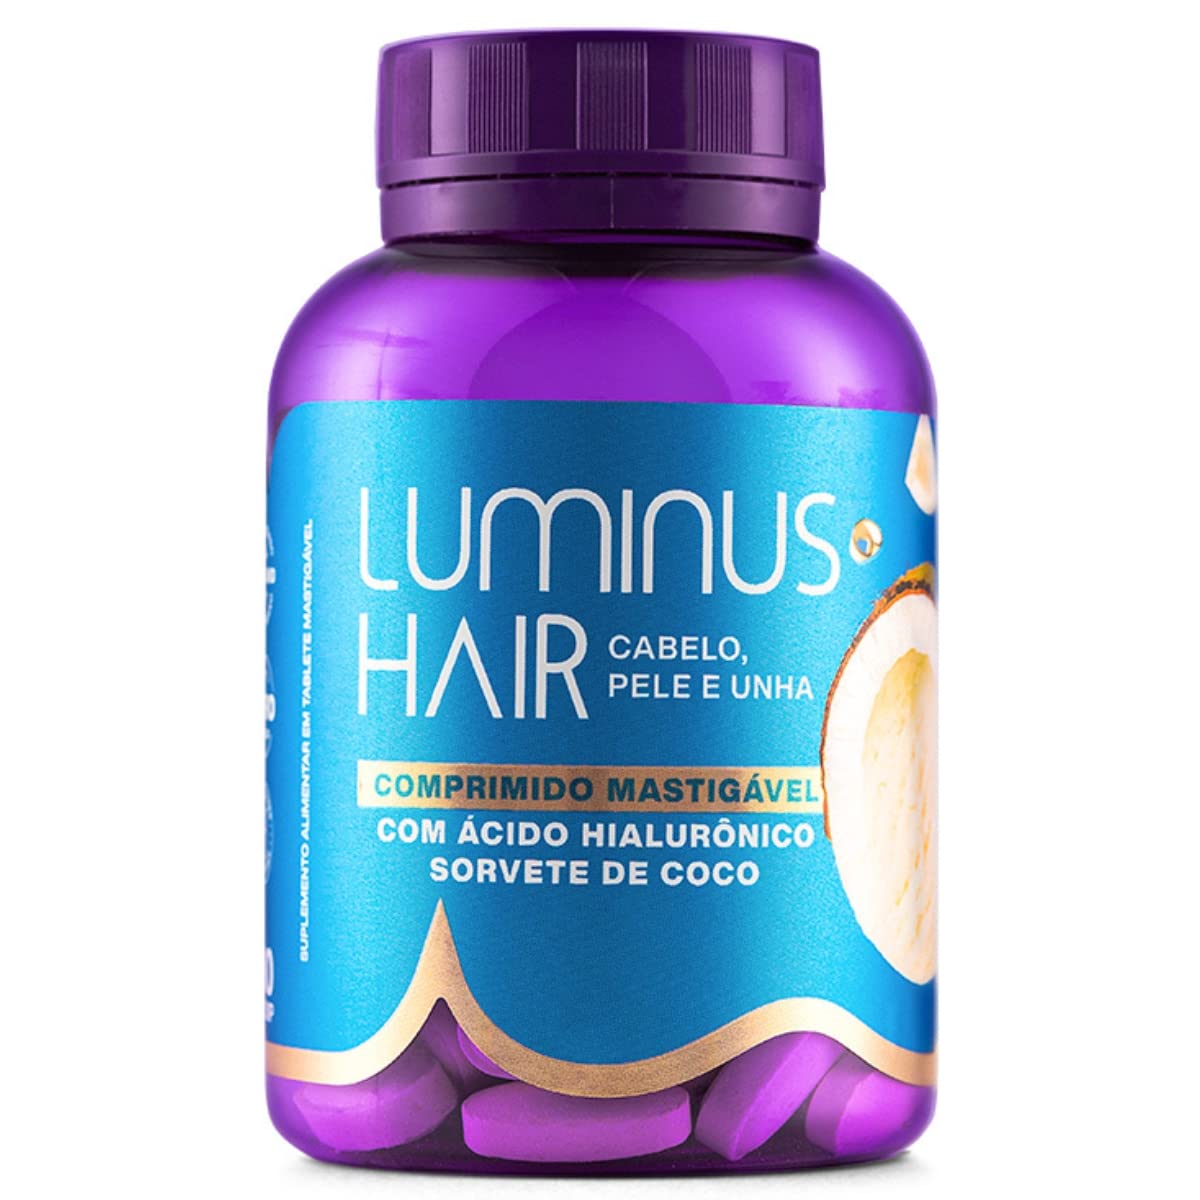 Luminus Hair Comprimido Mastigavel Sorvete de Coco Cabelo Pele e Unha